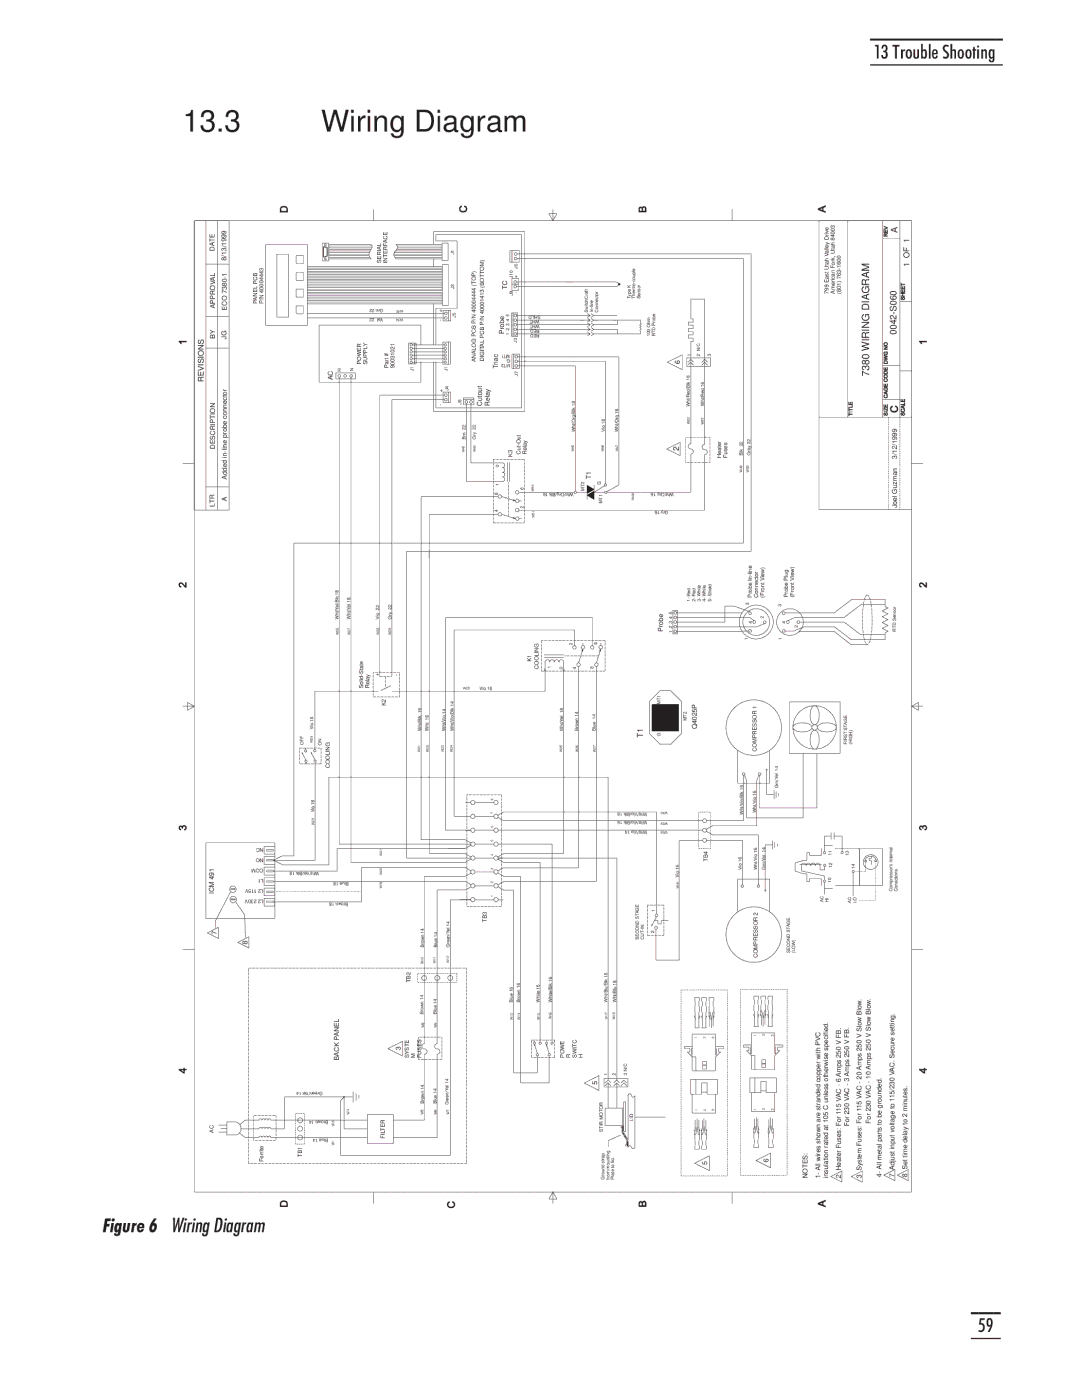 GE CTR 80 manual Wiring Diagram, Revisions 